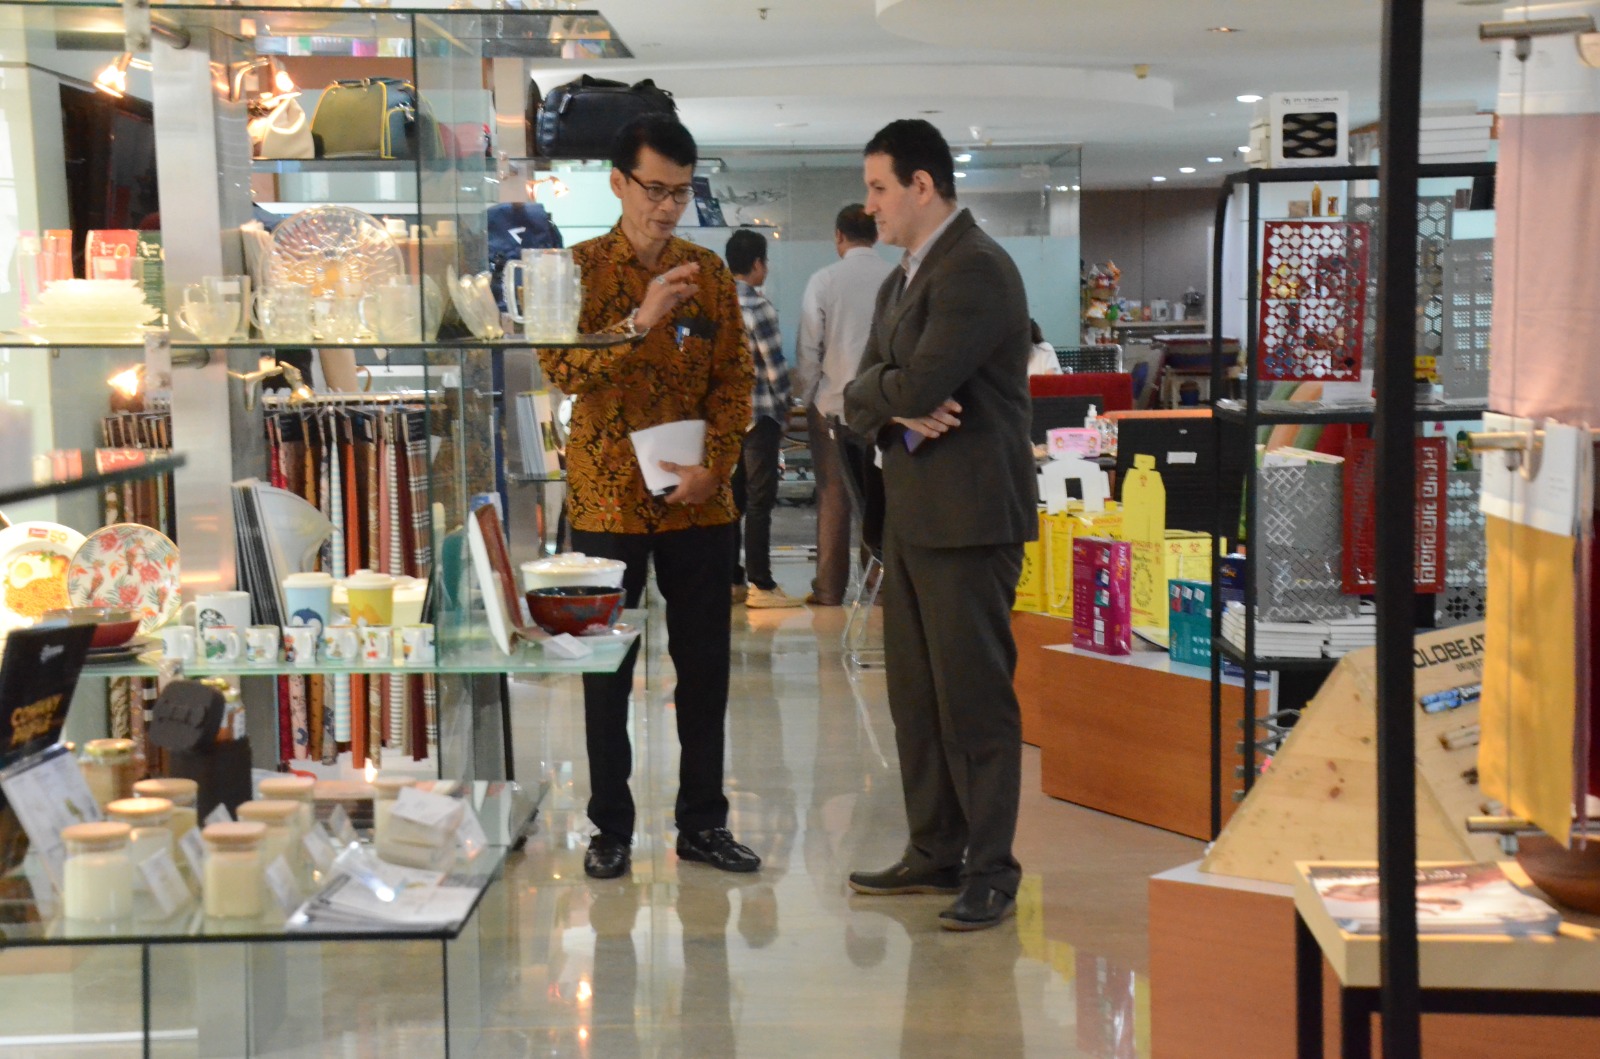 Para perwakilan negara sahabat menyampaikan apresiasi atas produk Indonesia yang ditampilkan serta memberikan masukan untuk meningkatkan kinerja ekspor ke negara asal mereka.